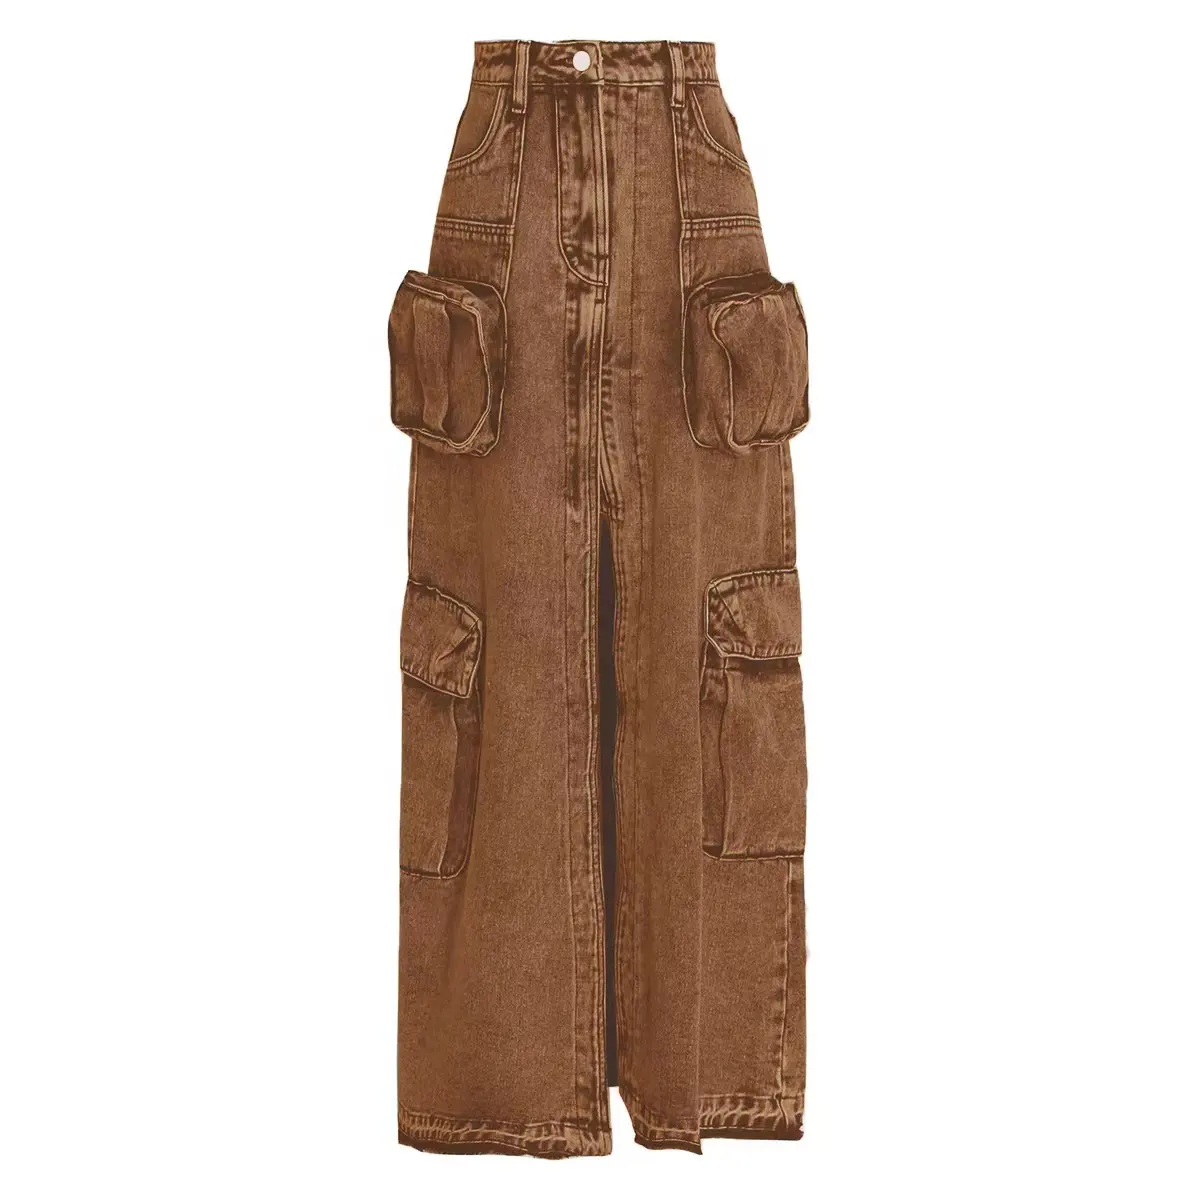 OUDINA Wholesale Discount Dropshipping Multiple Pockets Cargo Skirt High Waist Jean Women Long Denim Skirts